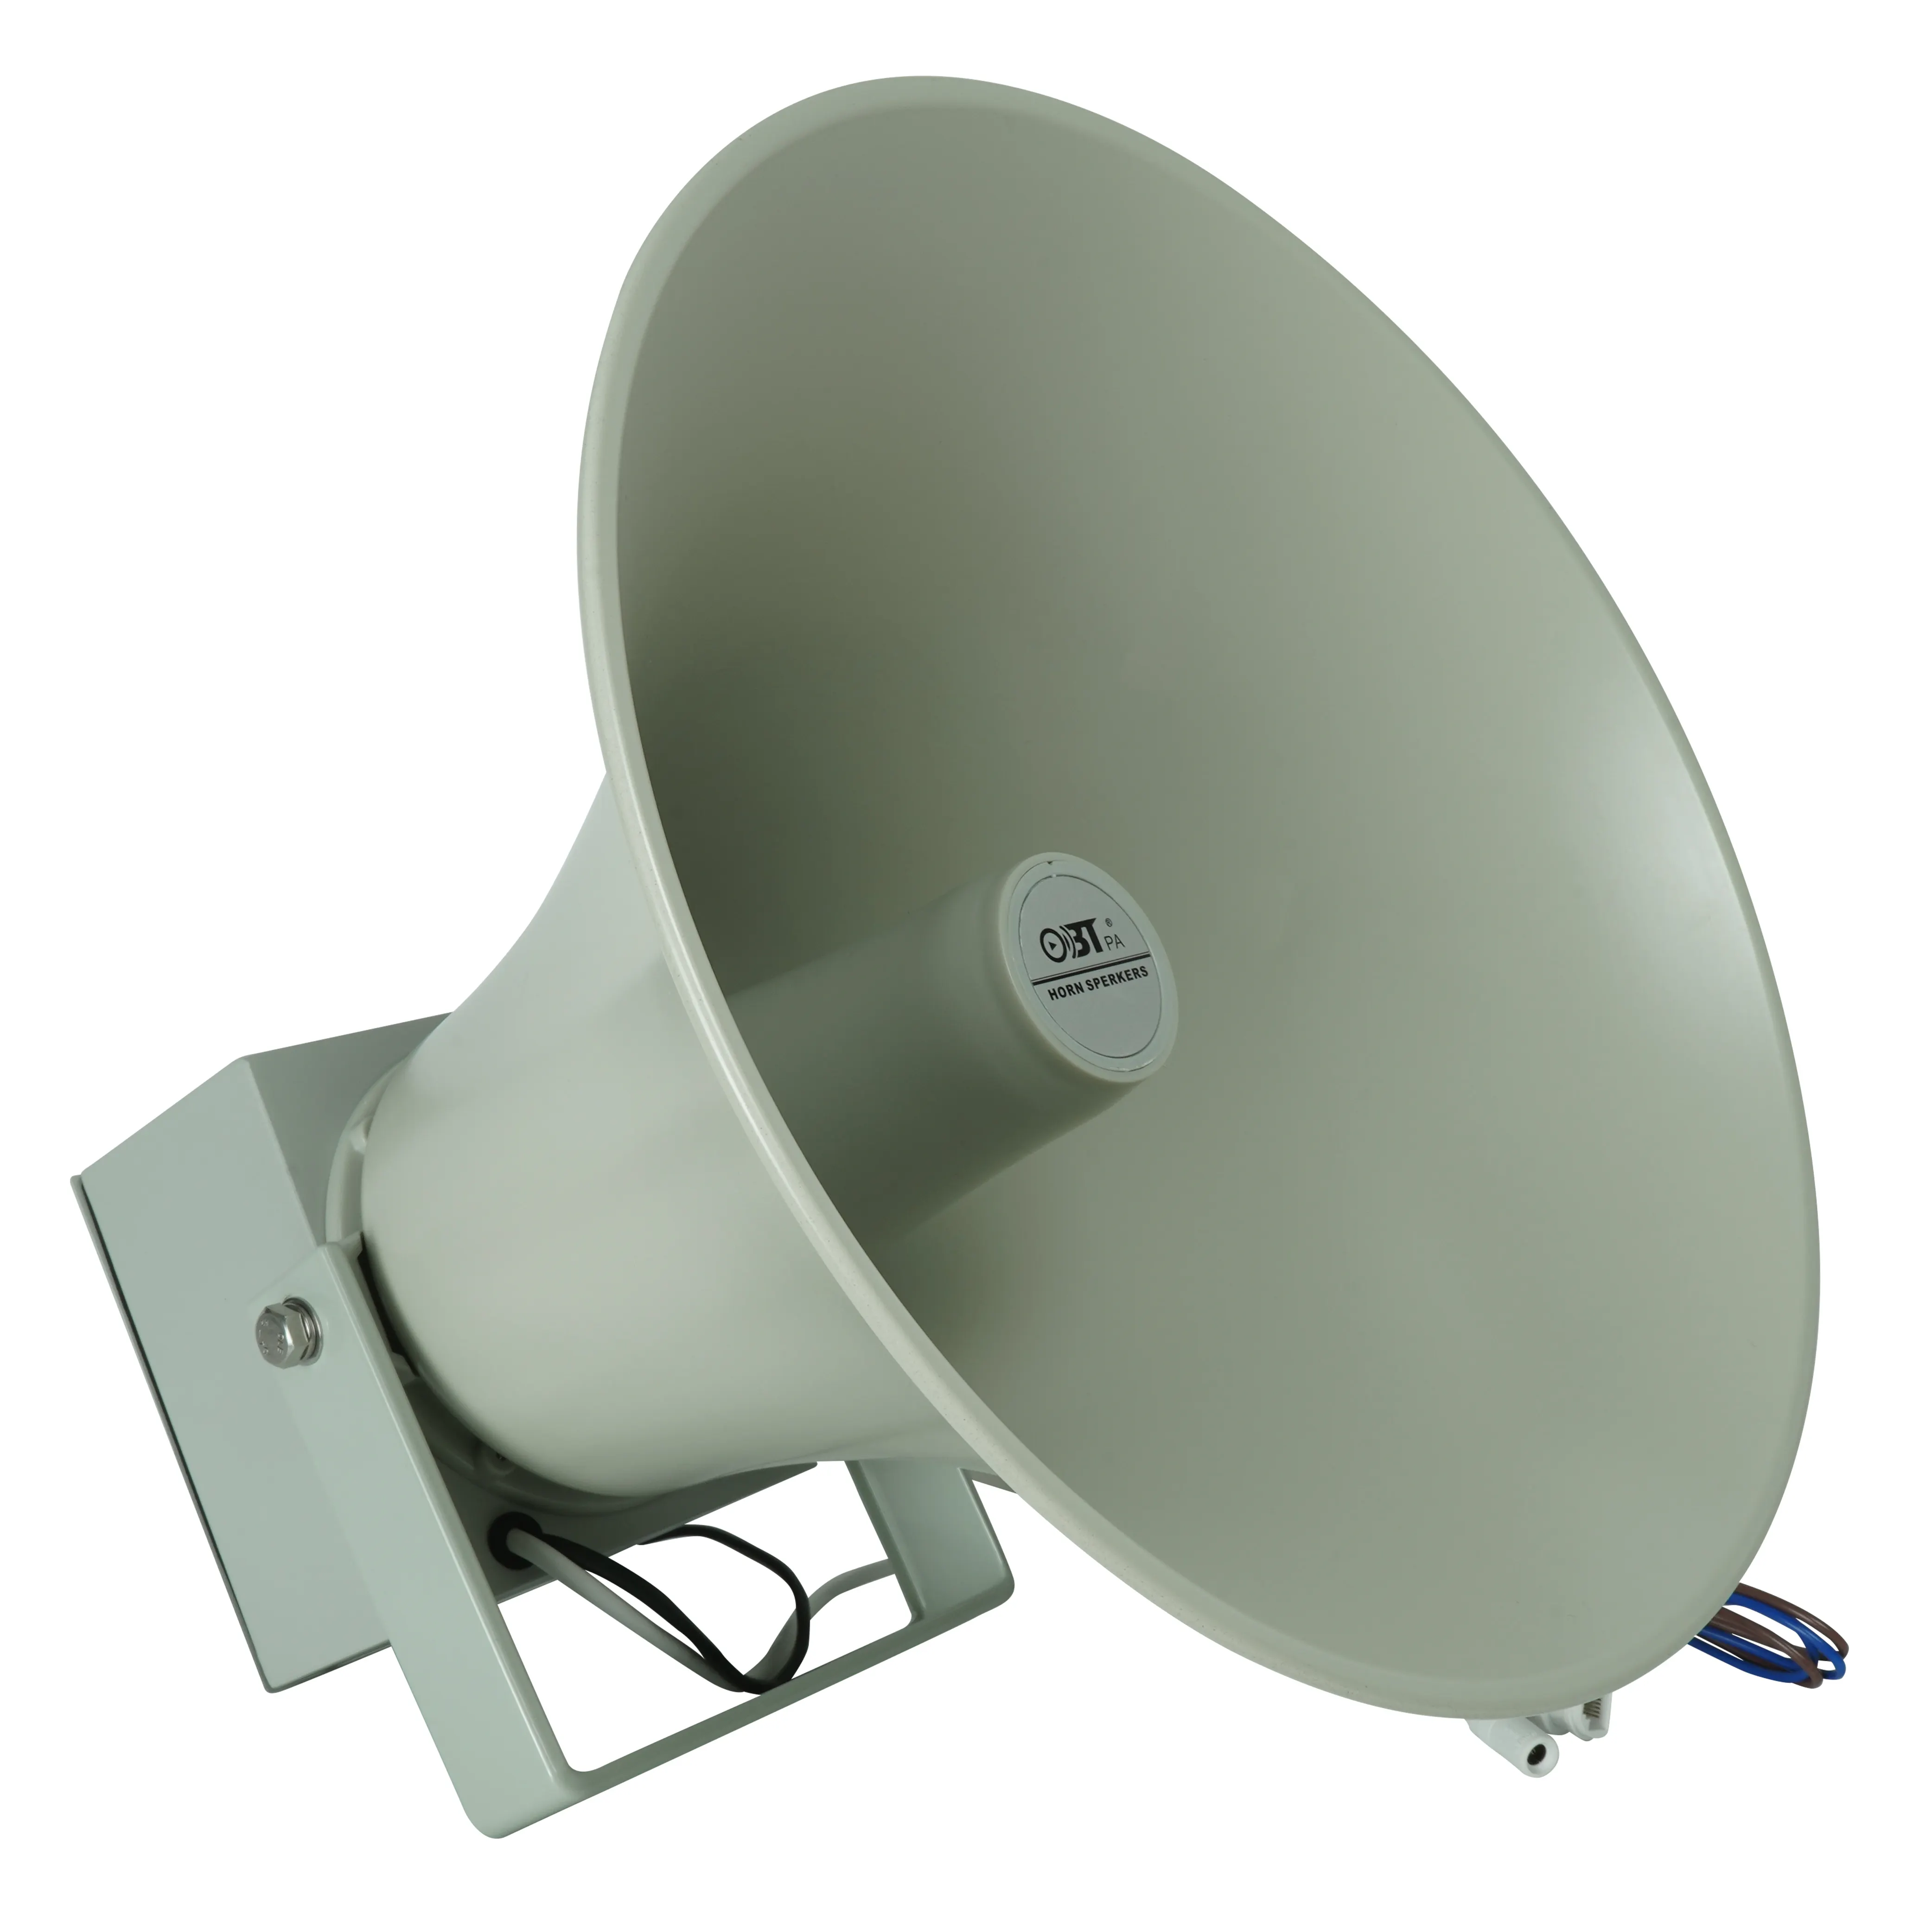 OBT Flat Police Toa haut-parleur professionnel à cornes intérieures et extérieures AC220V Hifi réseau IP haut-parleurs à cornes PA